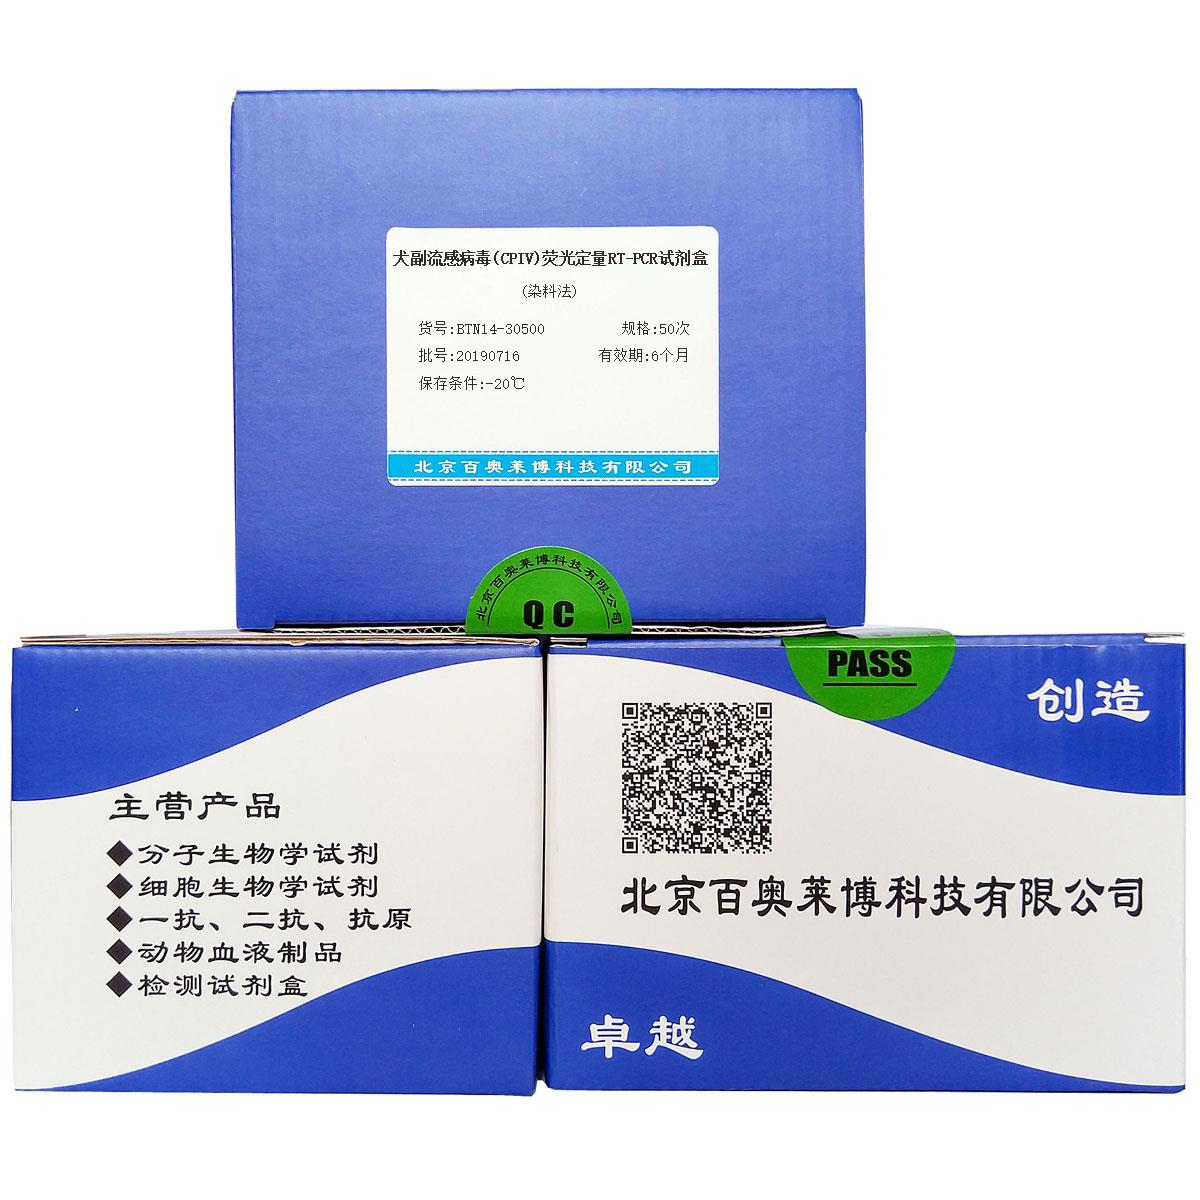 犬副流感病毒(CPIV)荧光定量RT-PCR试剂盒(染料法)